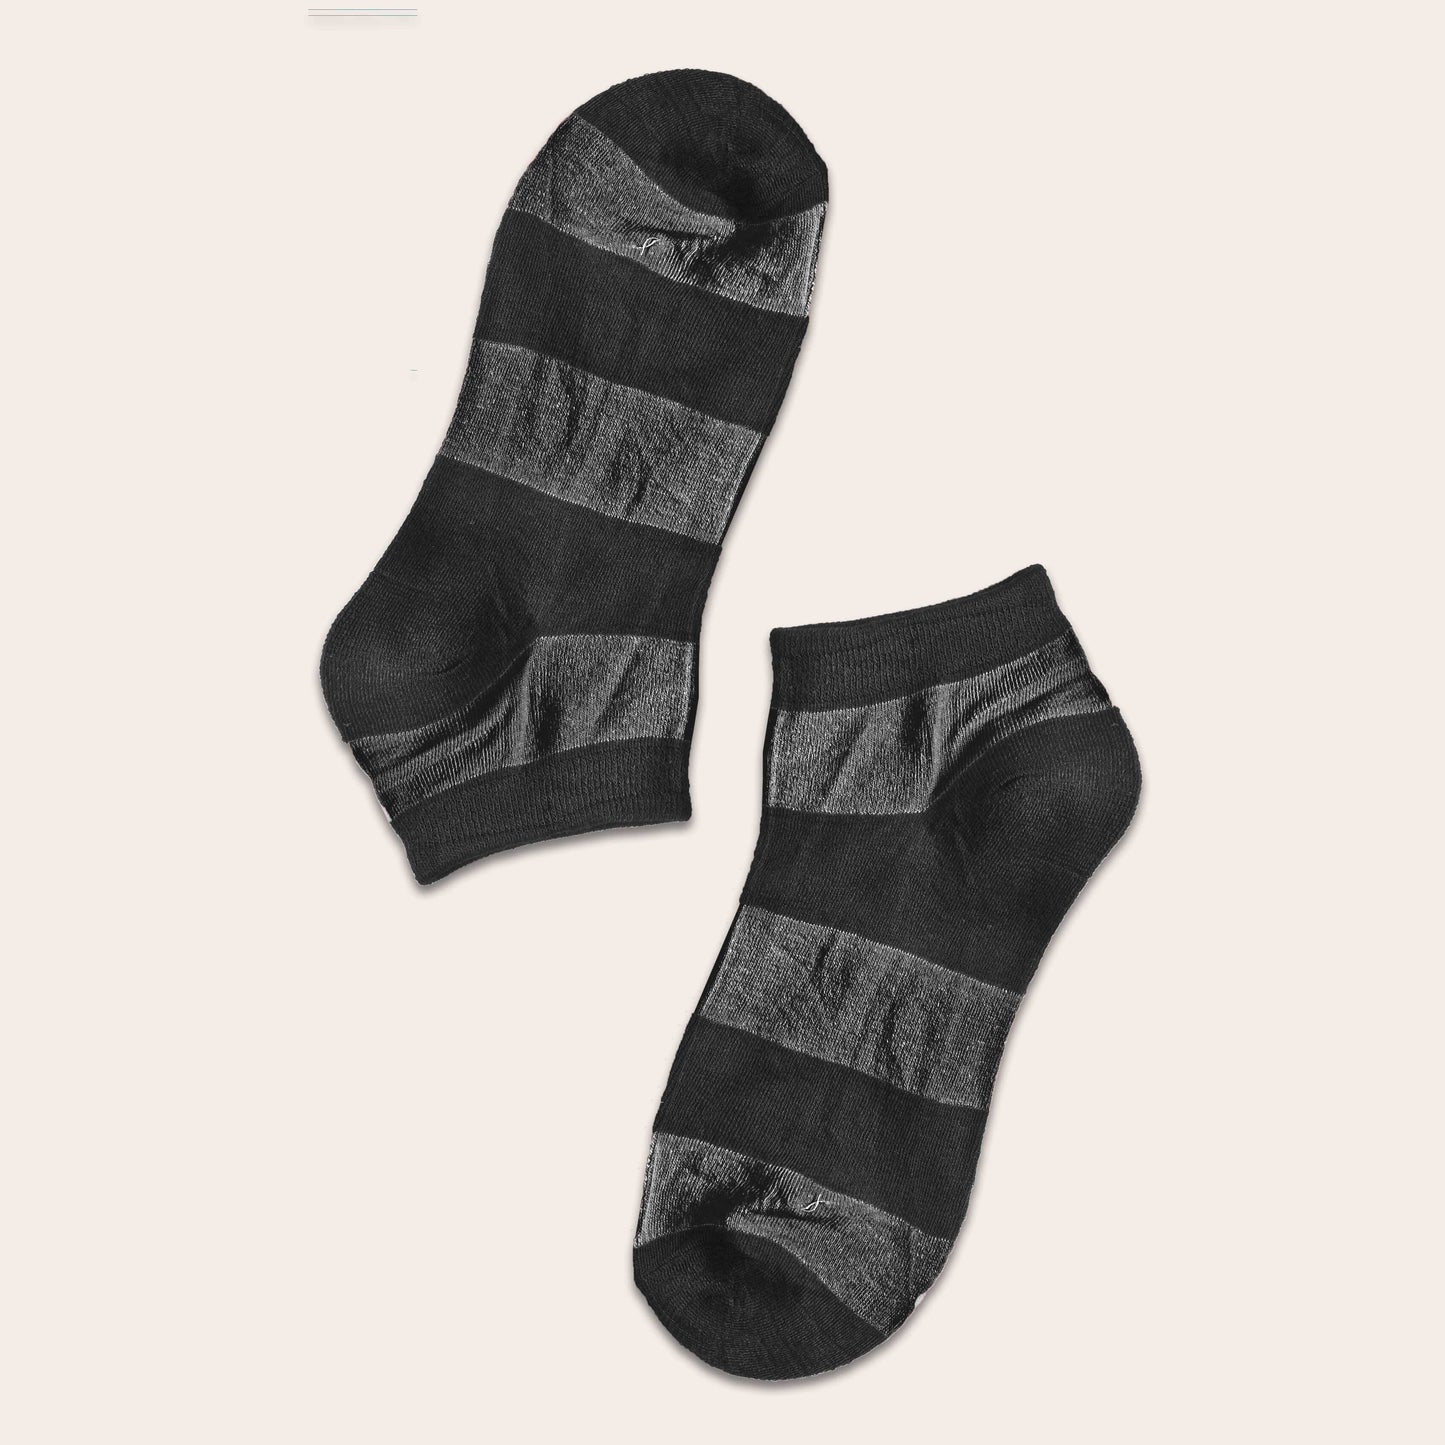 Tlia Men's Fashion Anklet Socks Socks SRL EUR 38-43 Charcoal D2